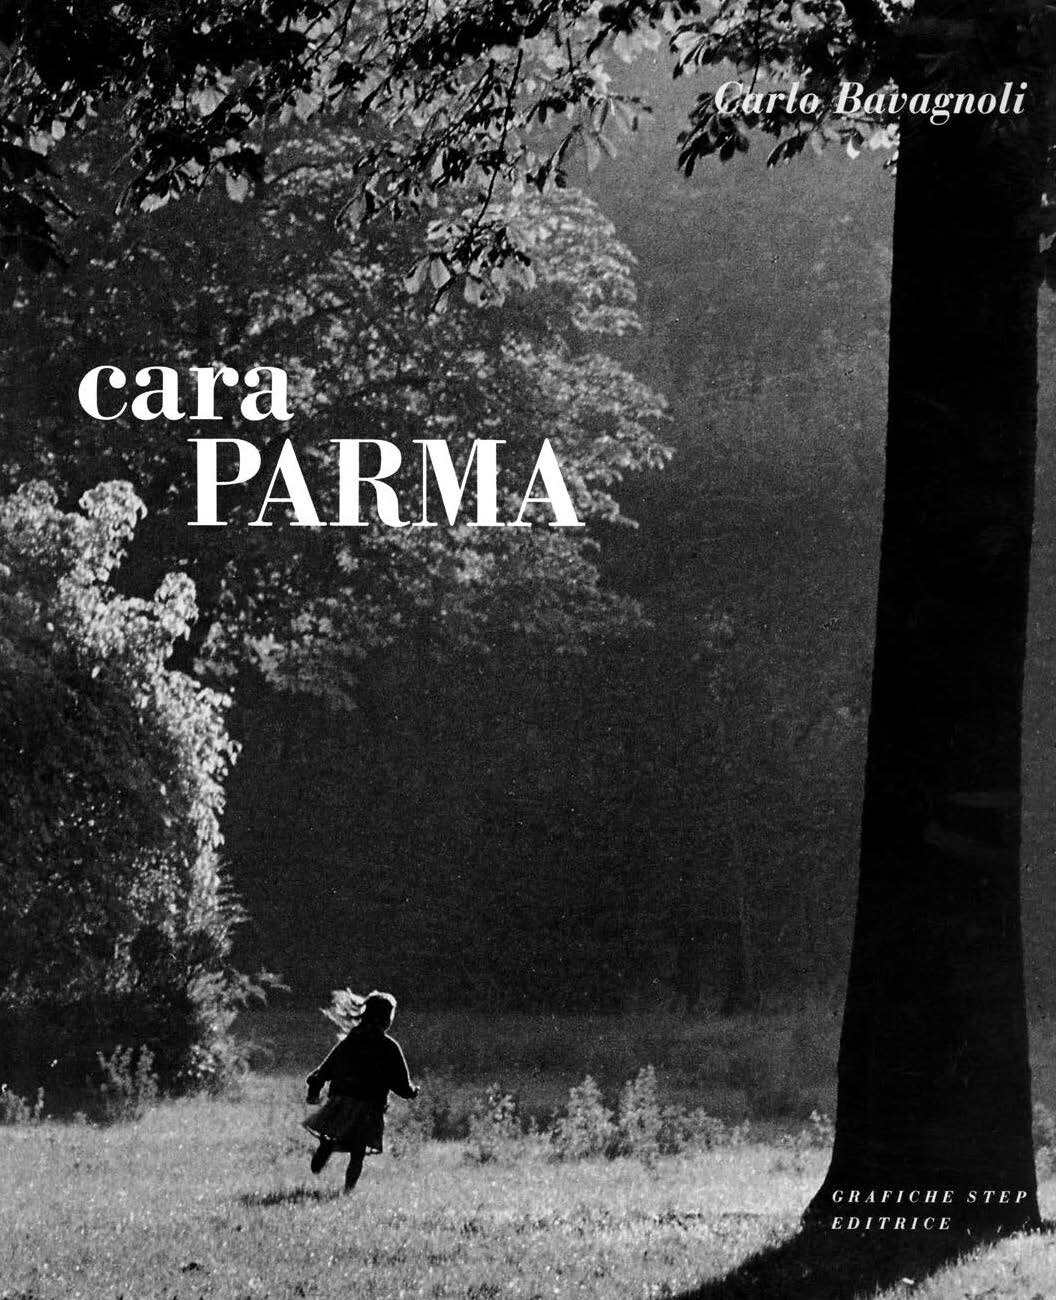 “Carlo Bavagnoli e Cara Parma: il racconto di una città”,  conferenza collaterale dedicata ad uno dei Maestri del fotogiornalismo internazionale